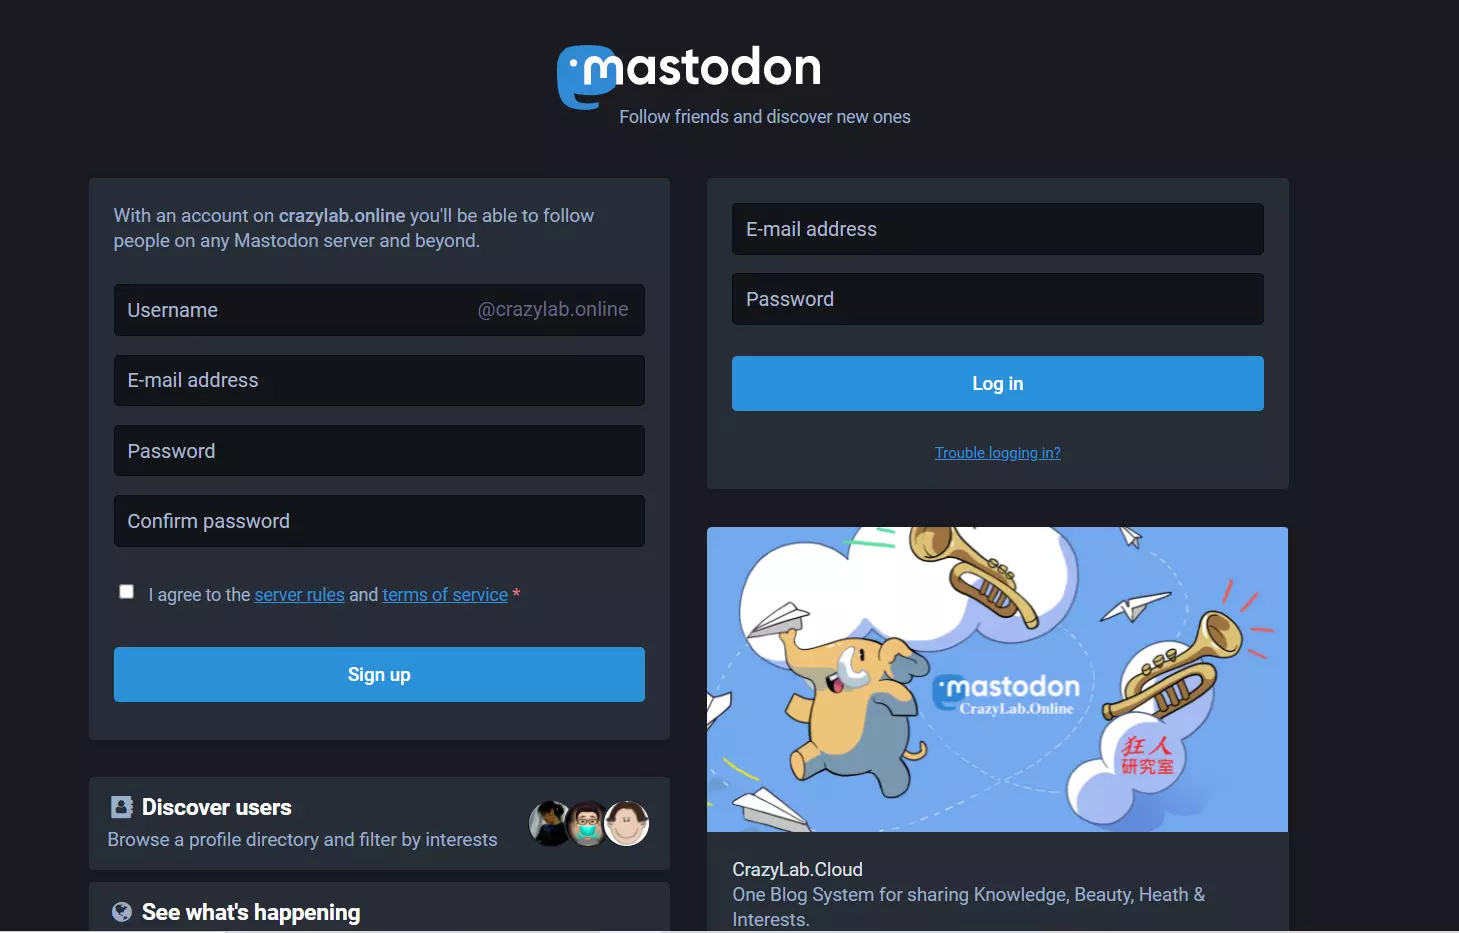 mastodon social login sign in to mastodon